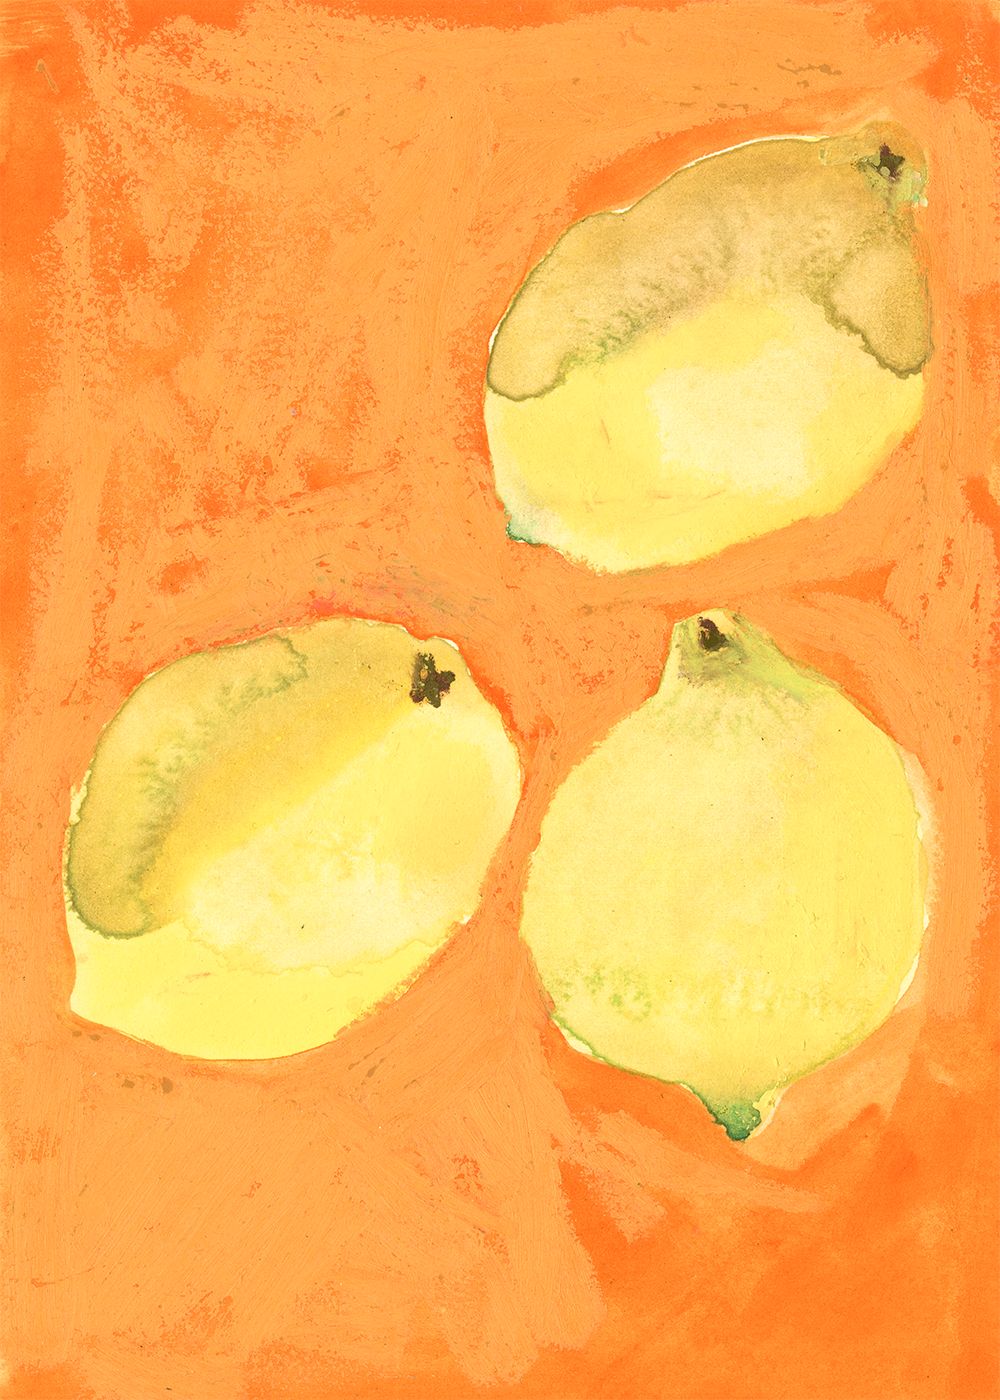 Cartel de limones colectivos de papel, 70x100 cm